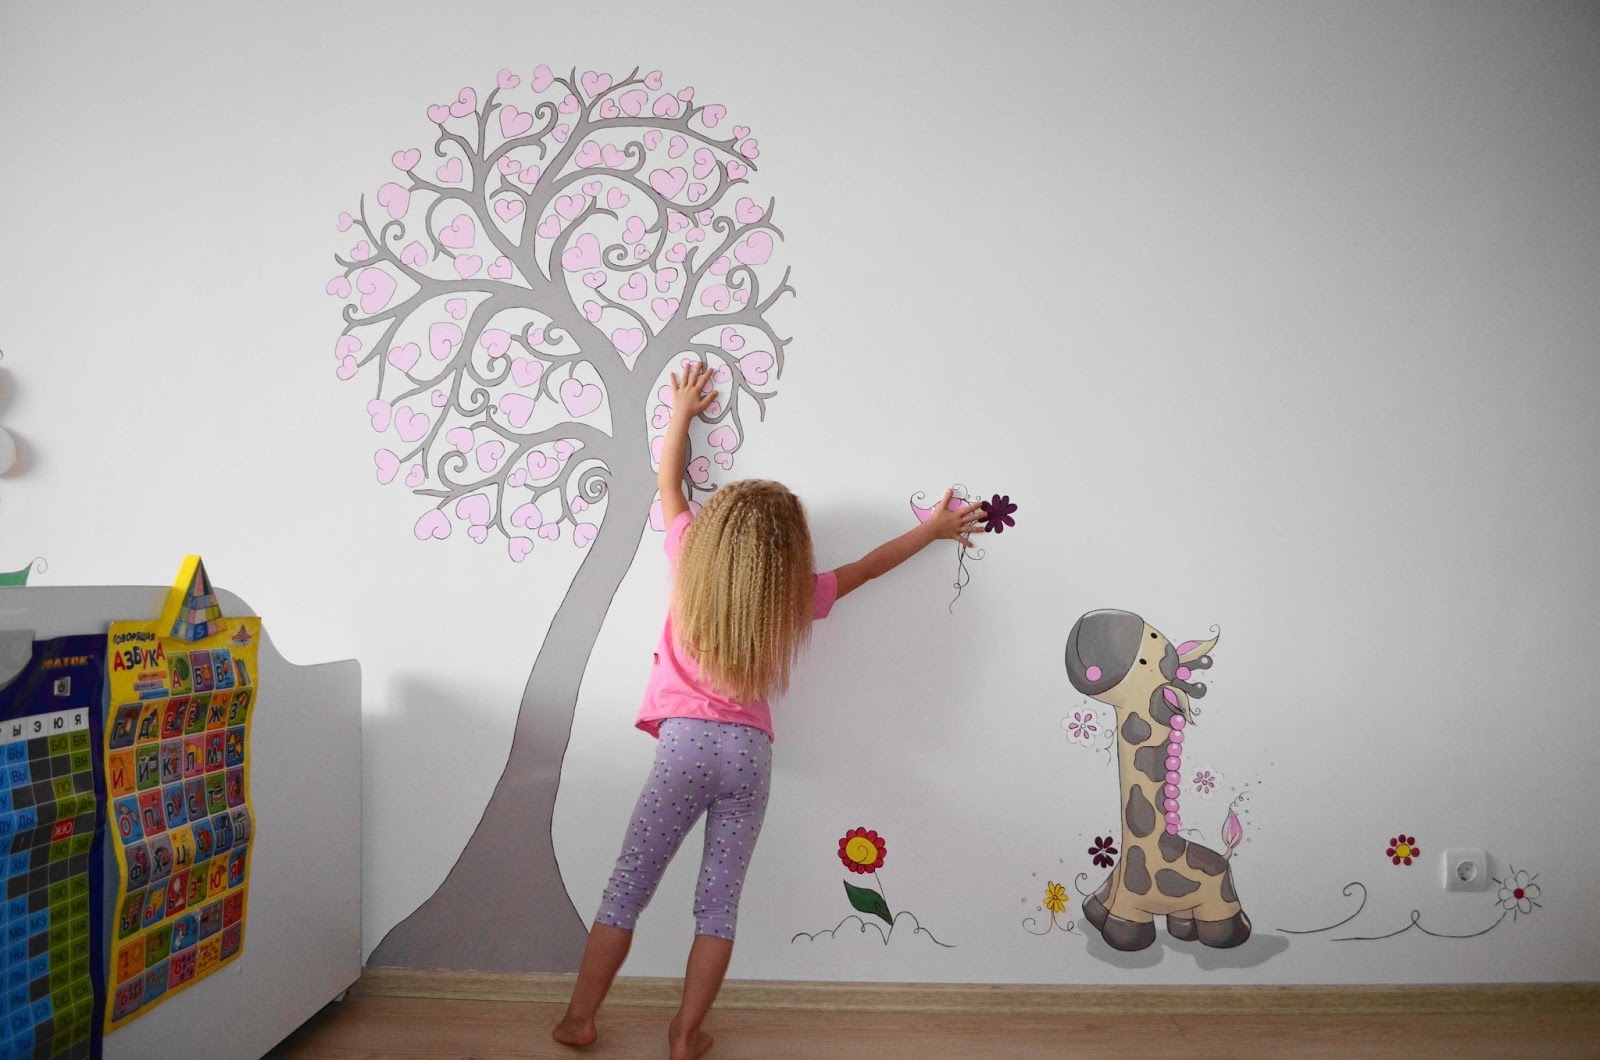 Волшебный мир с помощью рисунка на стенах детской комнаты